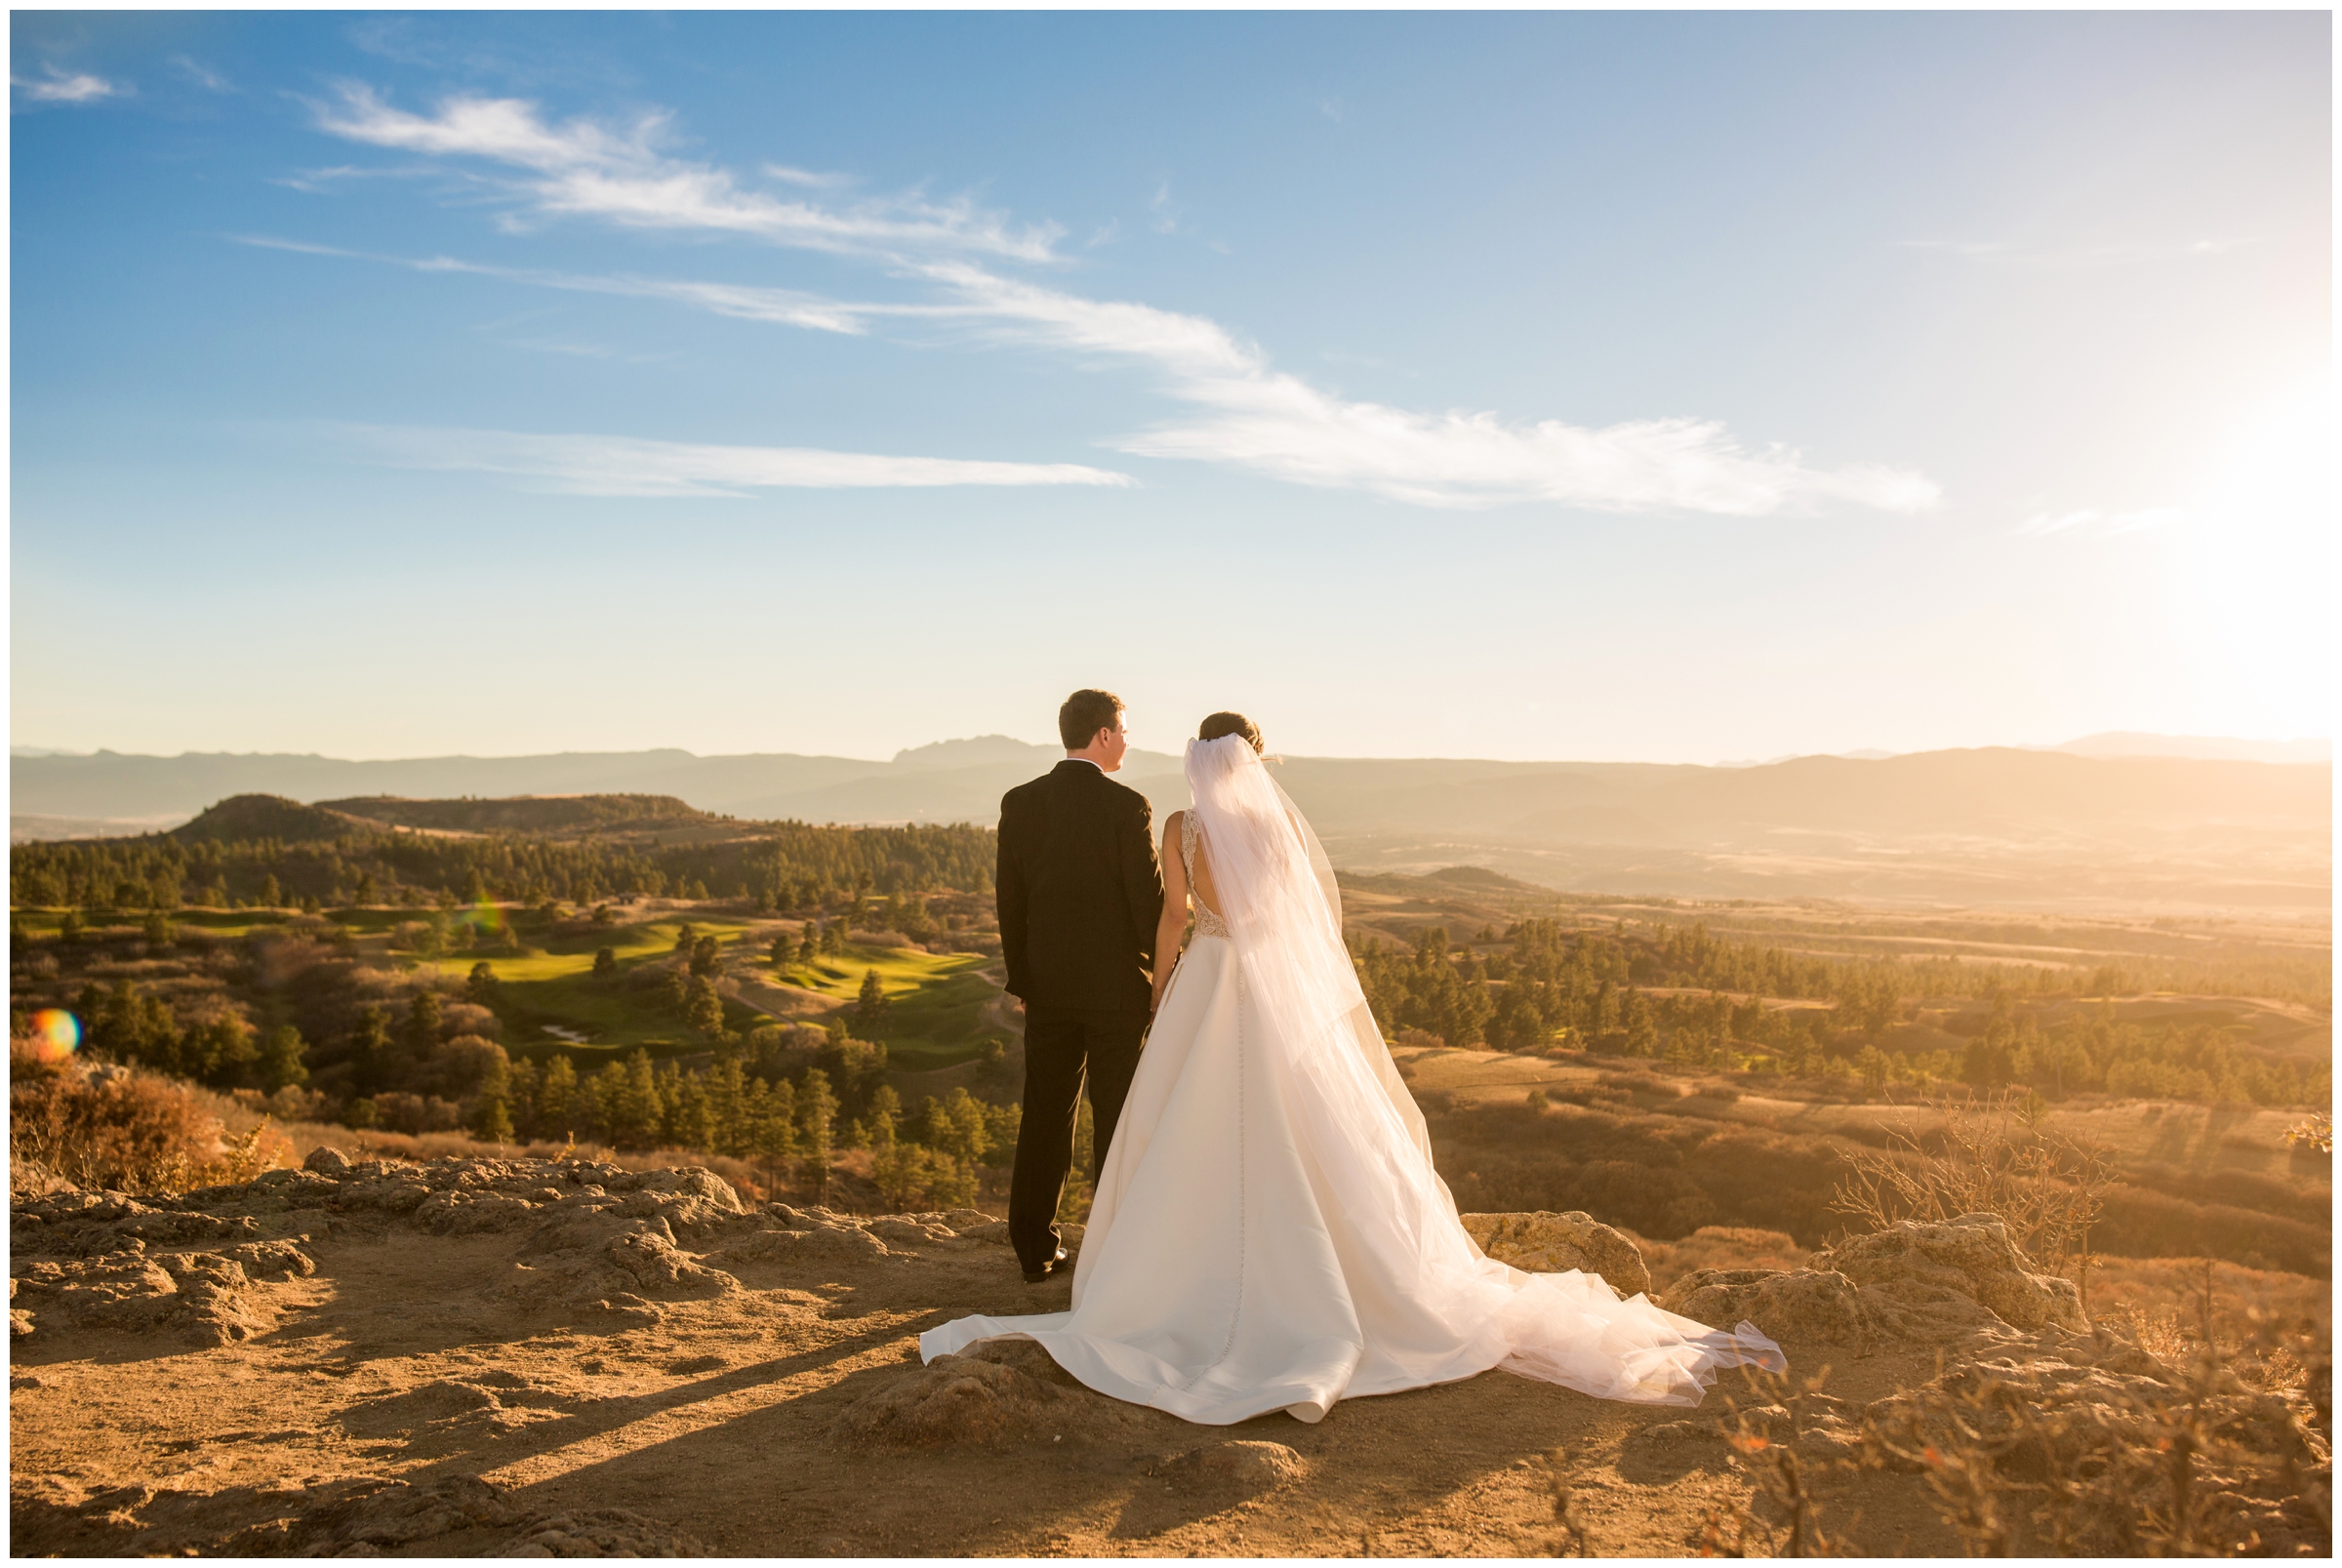 mountaintop Colorado wedding photography inspiration 